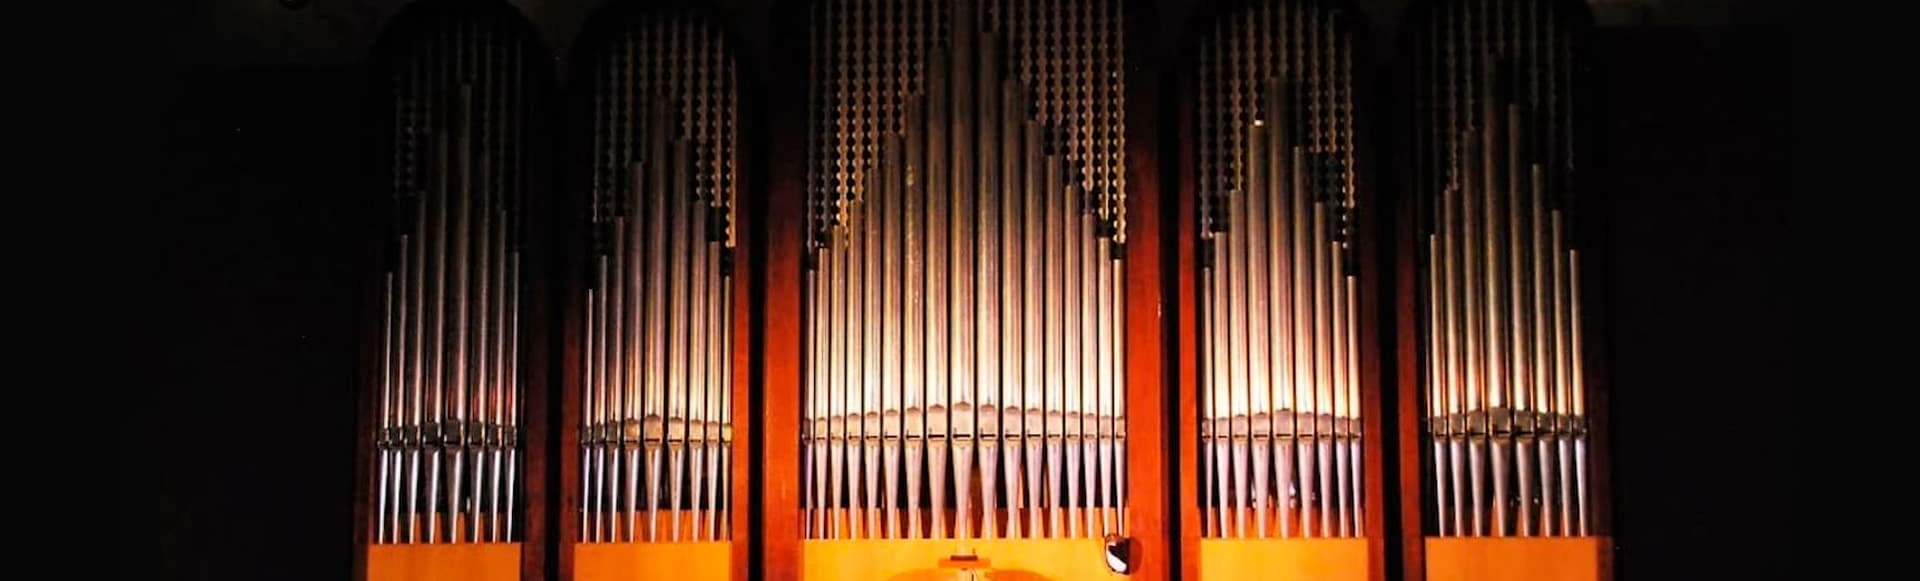 Репертуар Зимнего театра и Зала органной и камерной музыки в июле порадует жителей и гостей Сочи уникальным предложением!